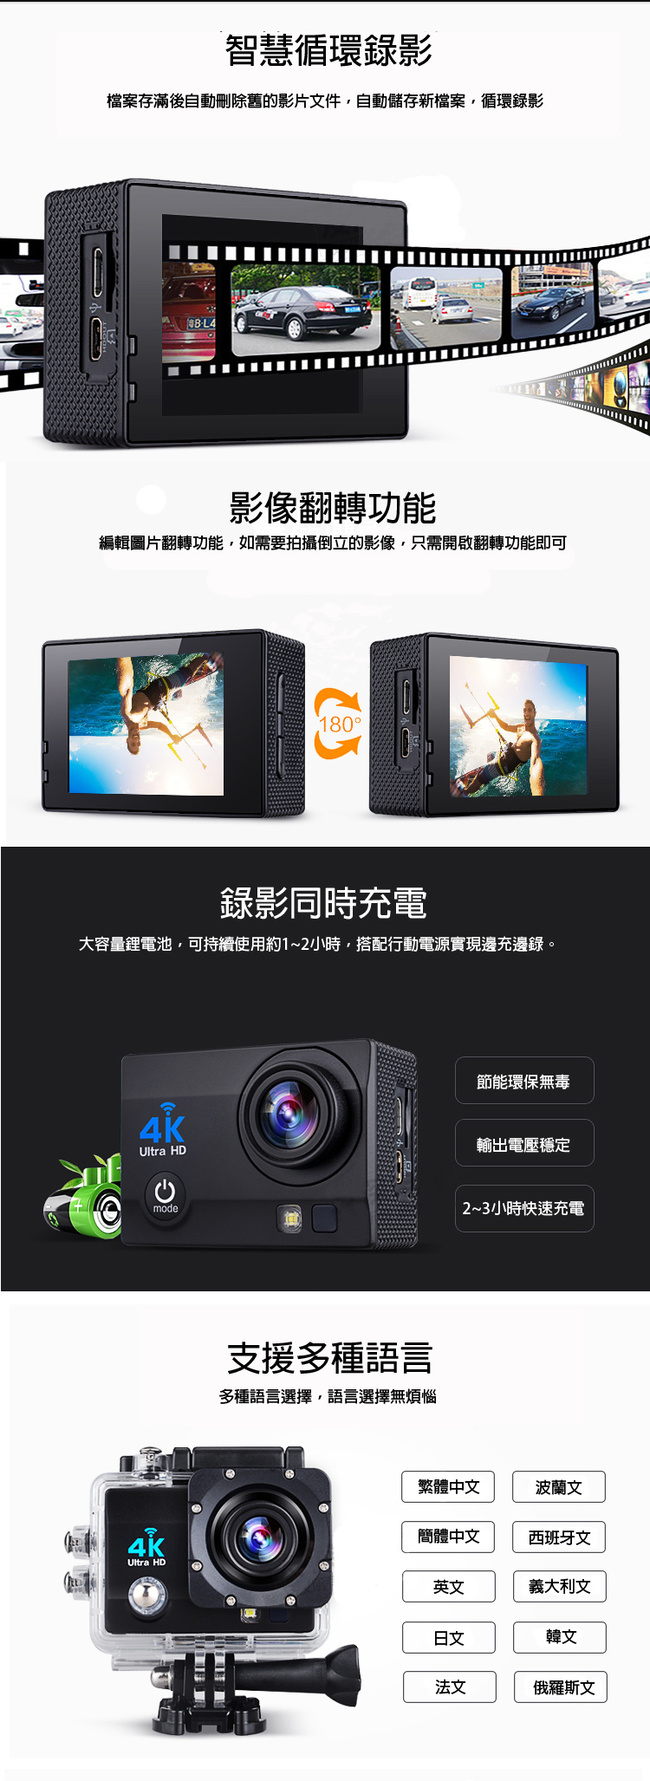 (贈32GB記憶卡) 4K-SHOT 4K UHD高畫質運動攝影機